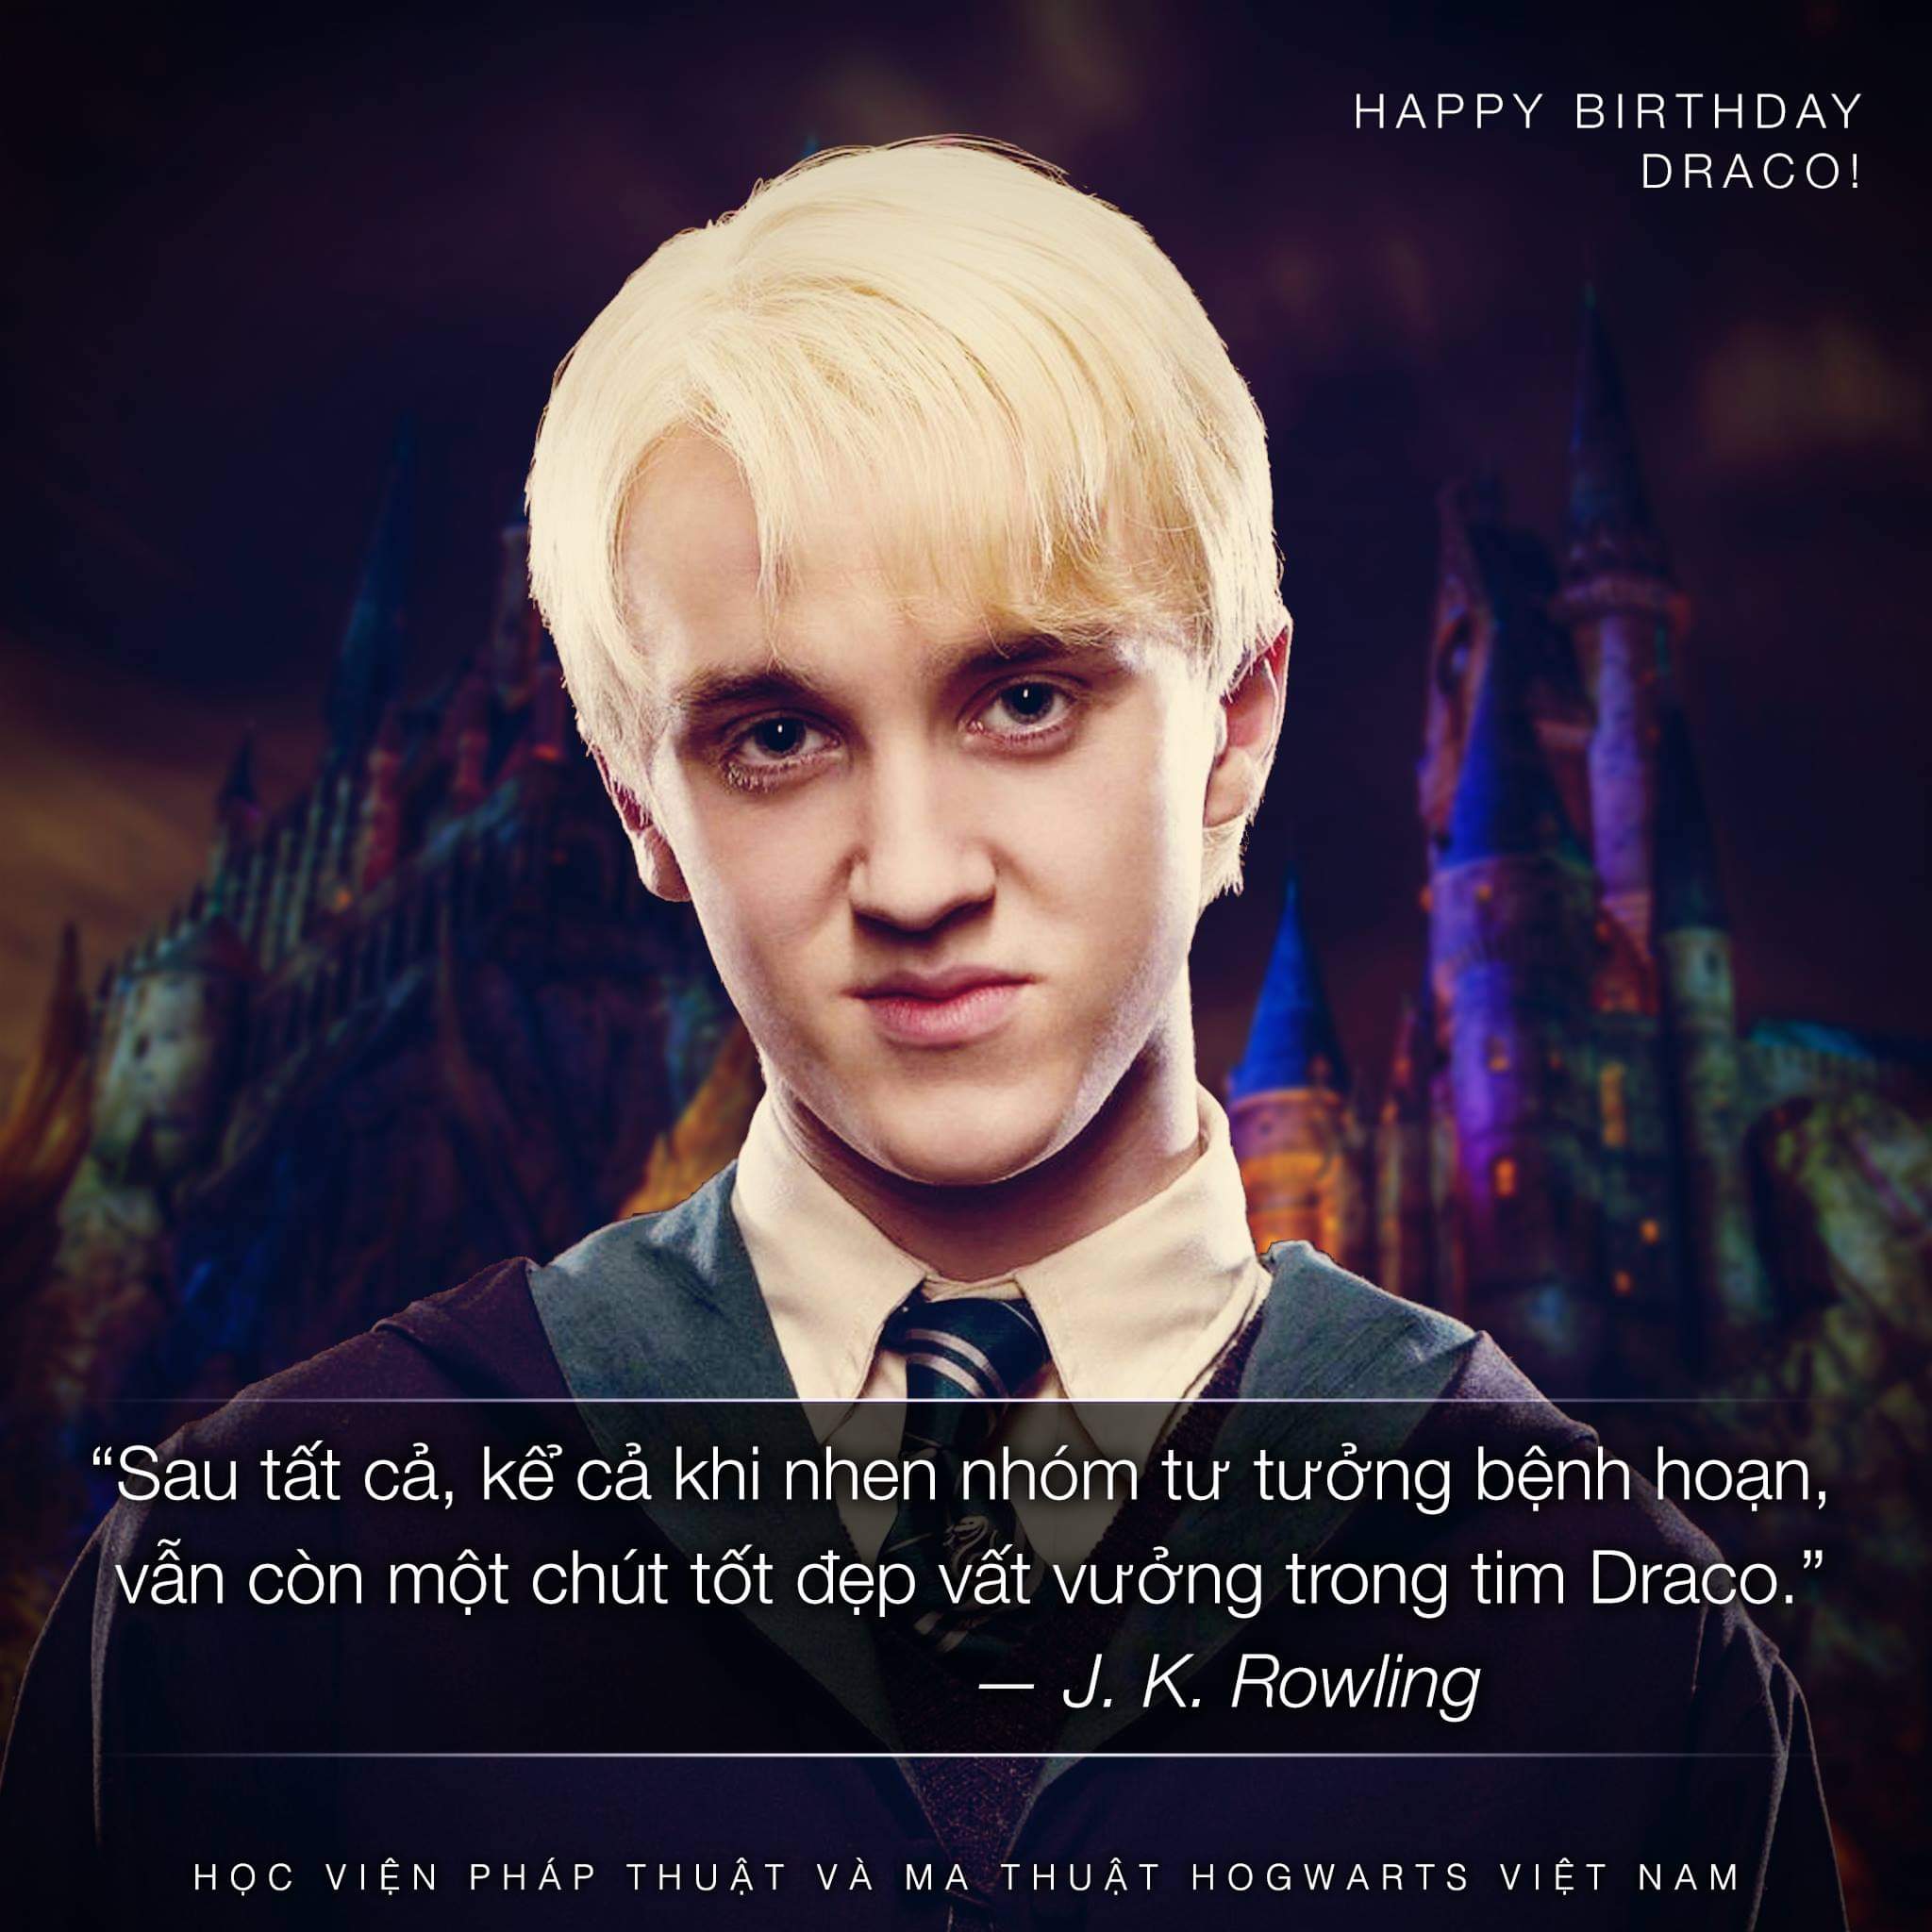 Chúc mừng sinh nhật Draco Malfoy!